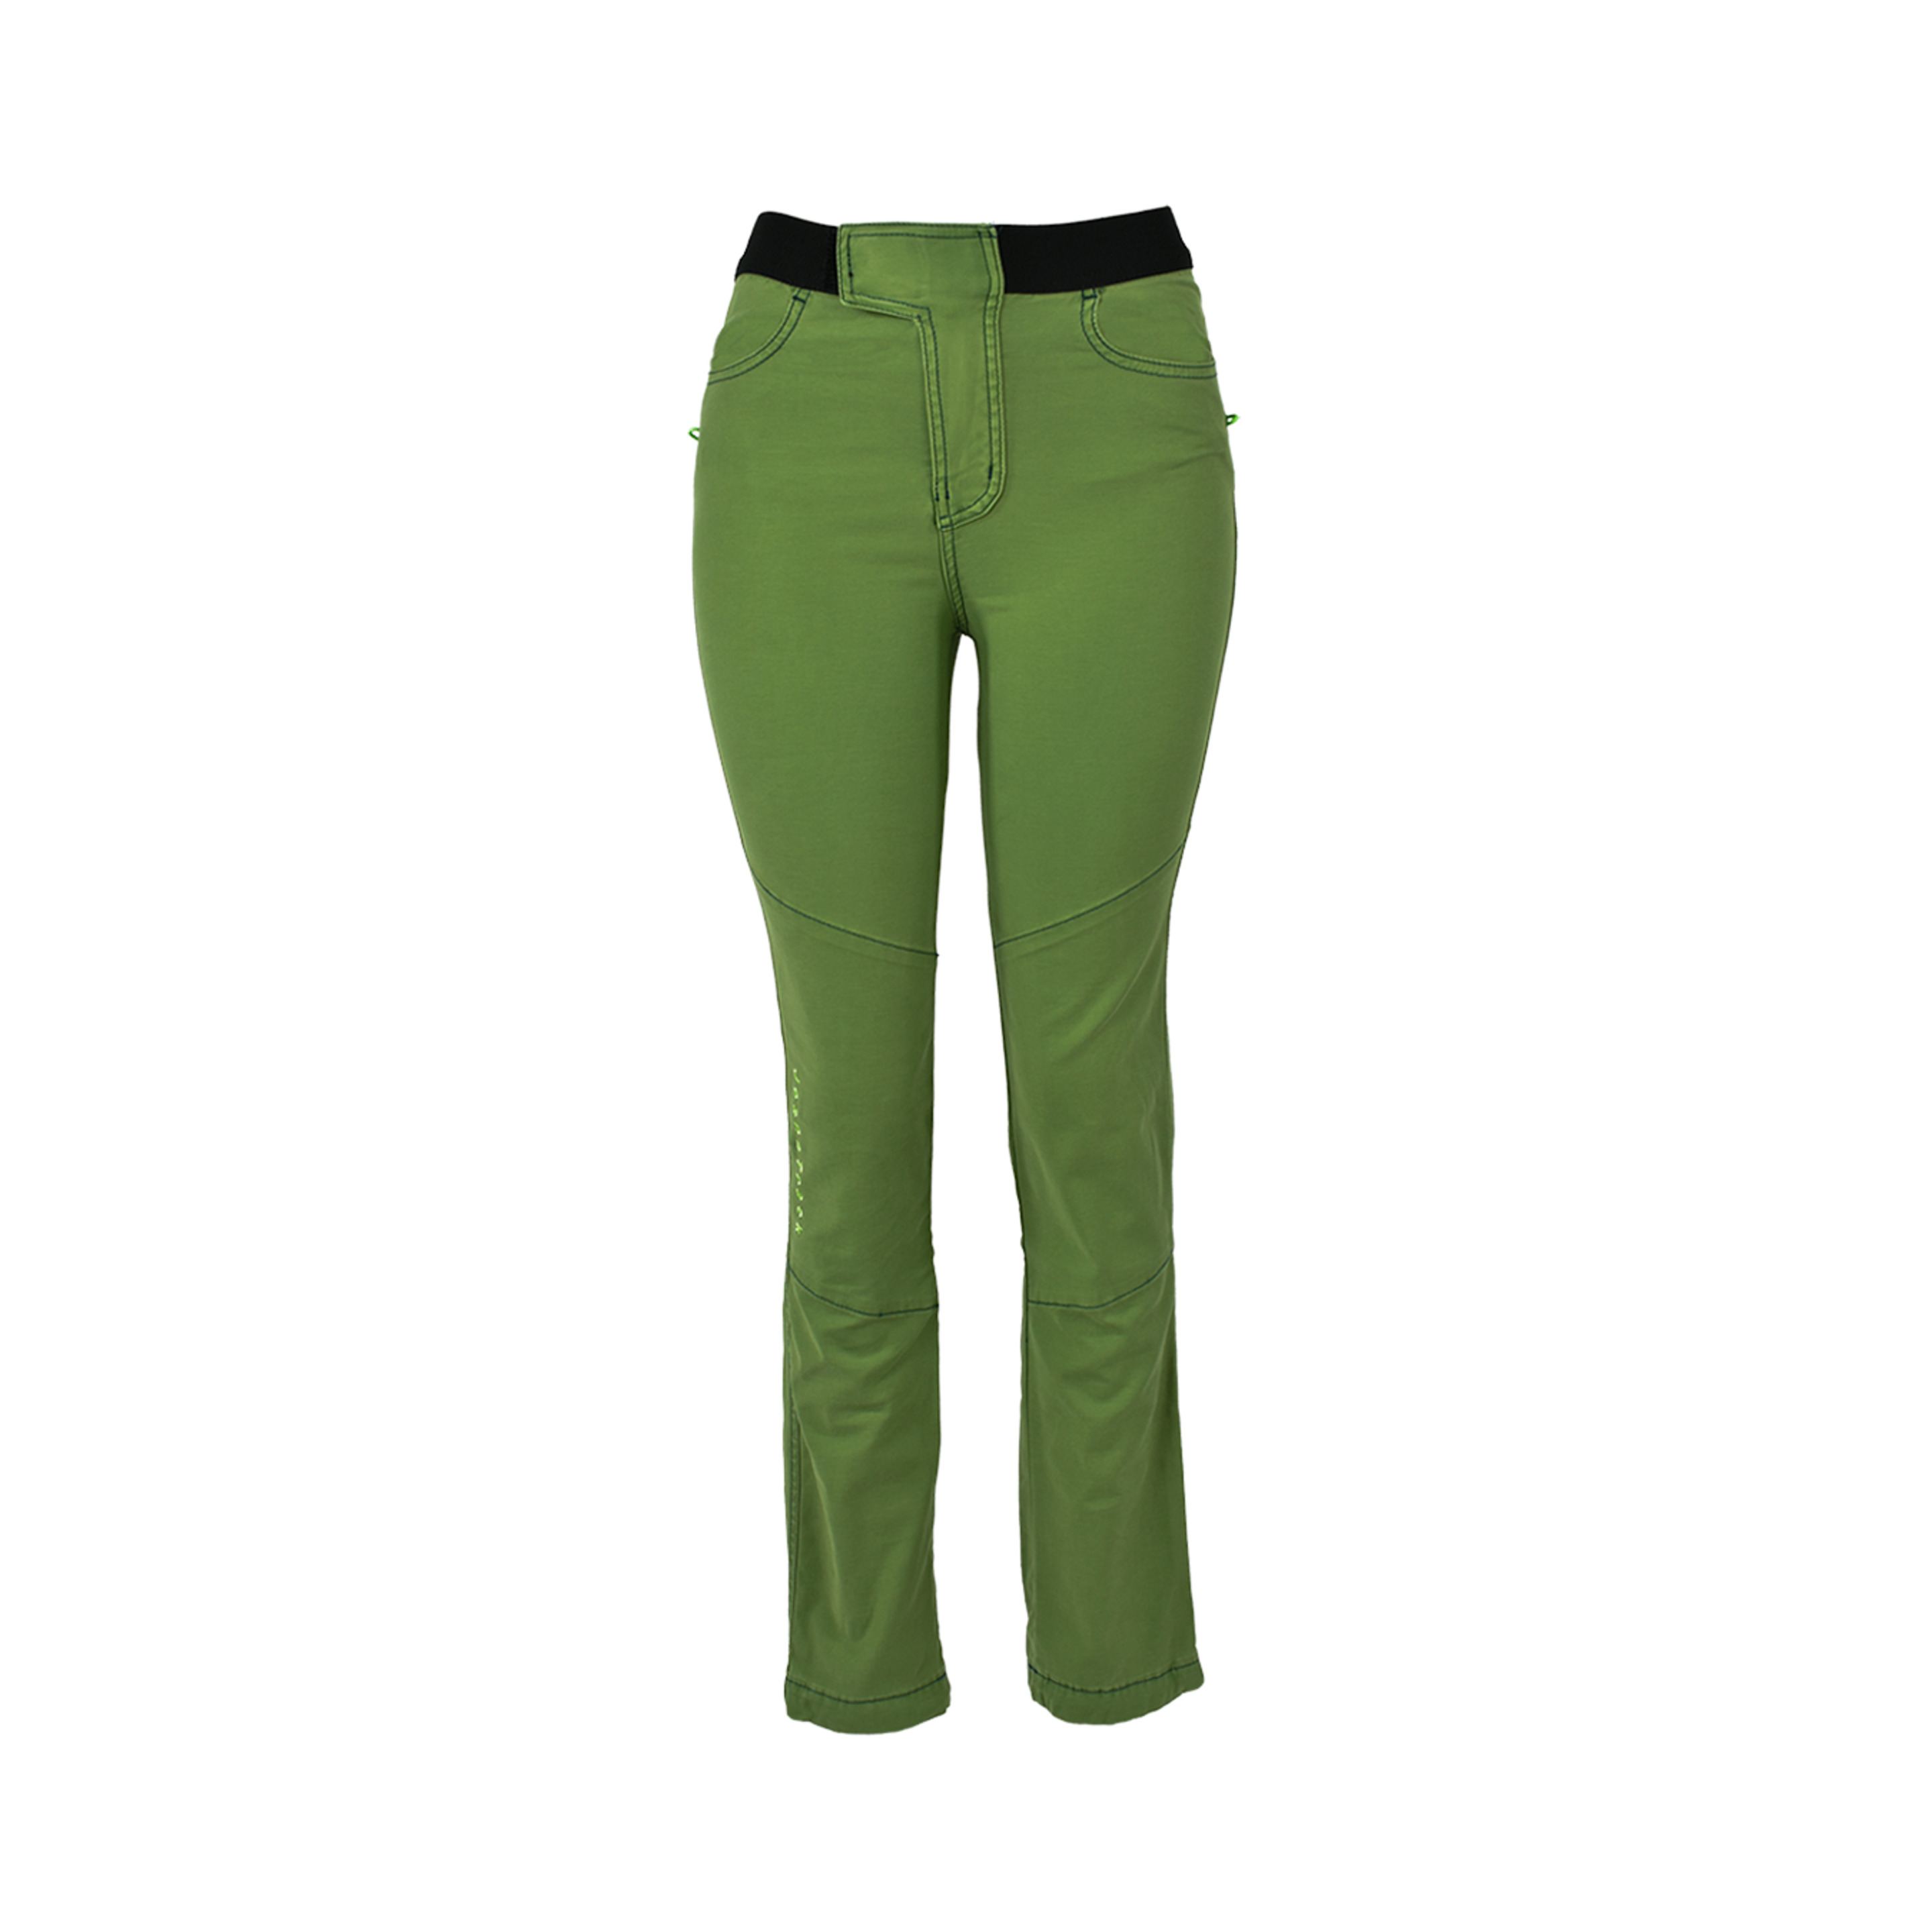 Pantalón Escalada Jeanstrack Saona - verde - 